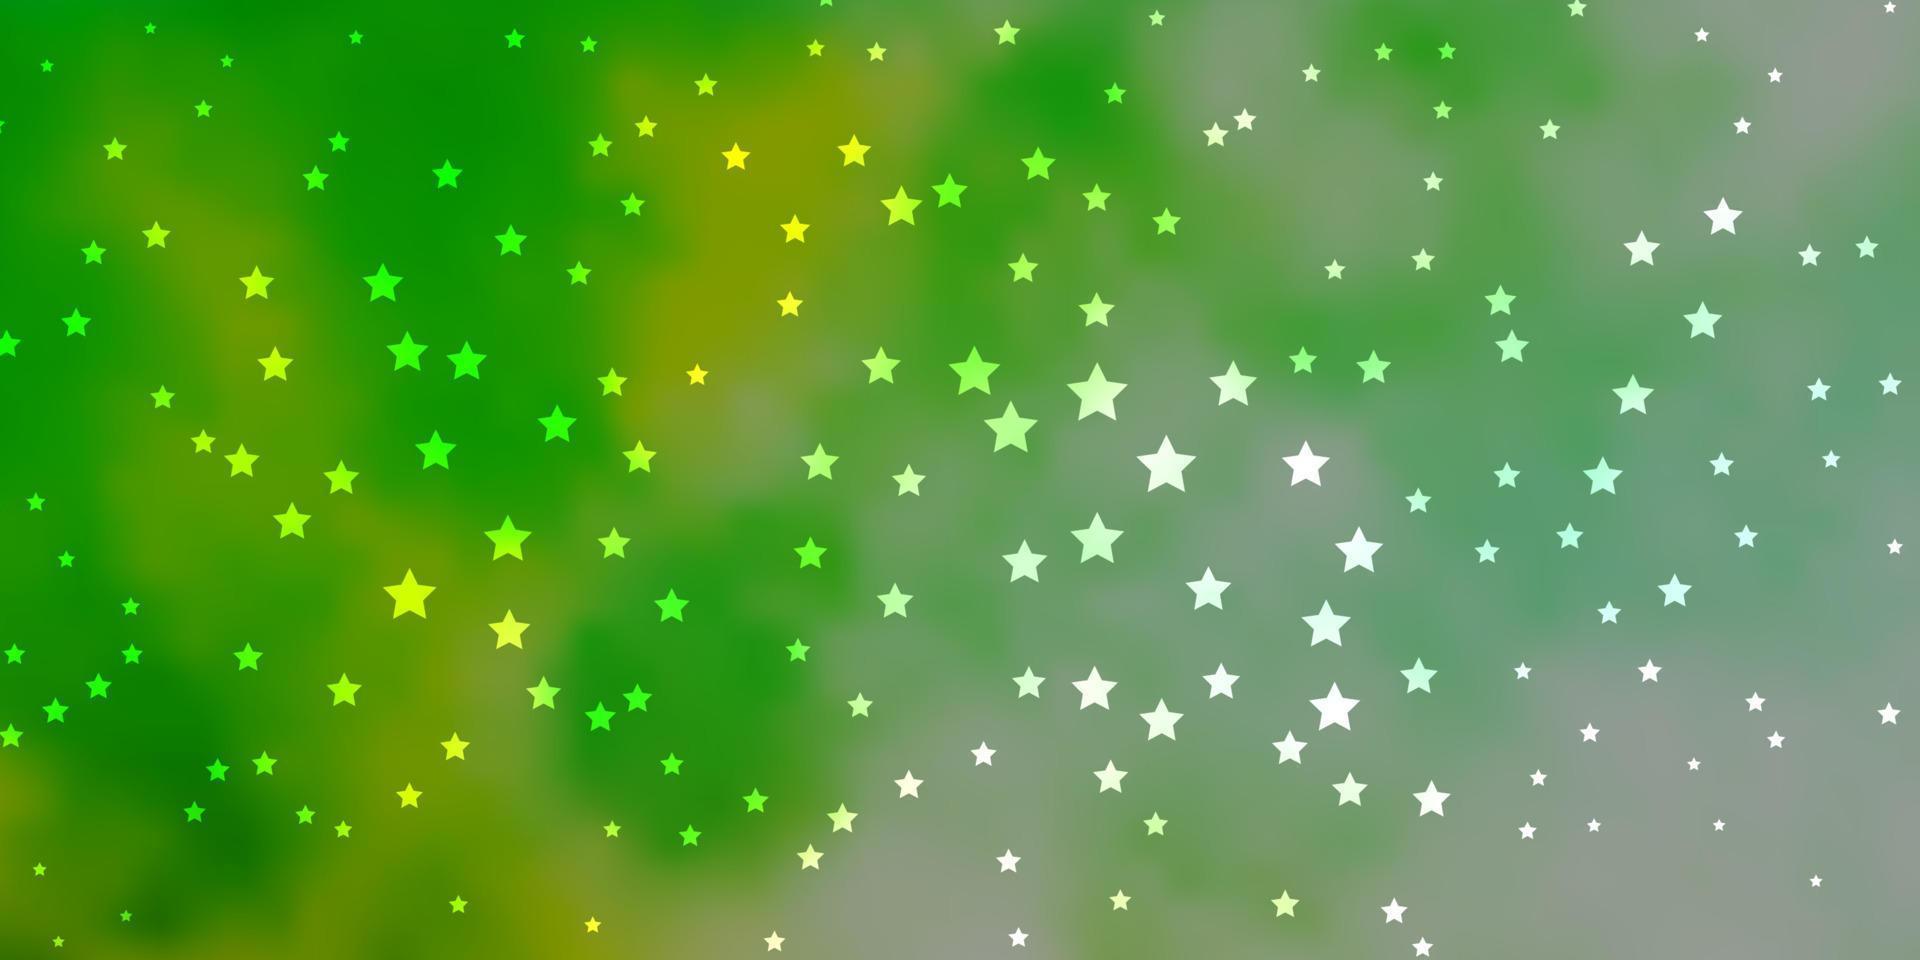 mörkblå, grön vektorlayout med ljusa stjärnor. vektor